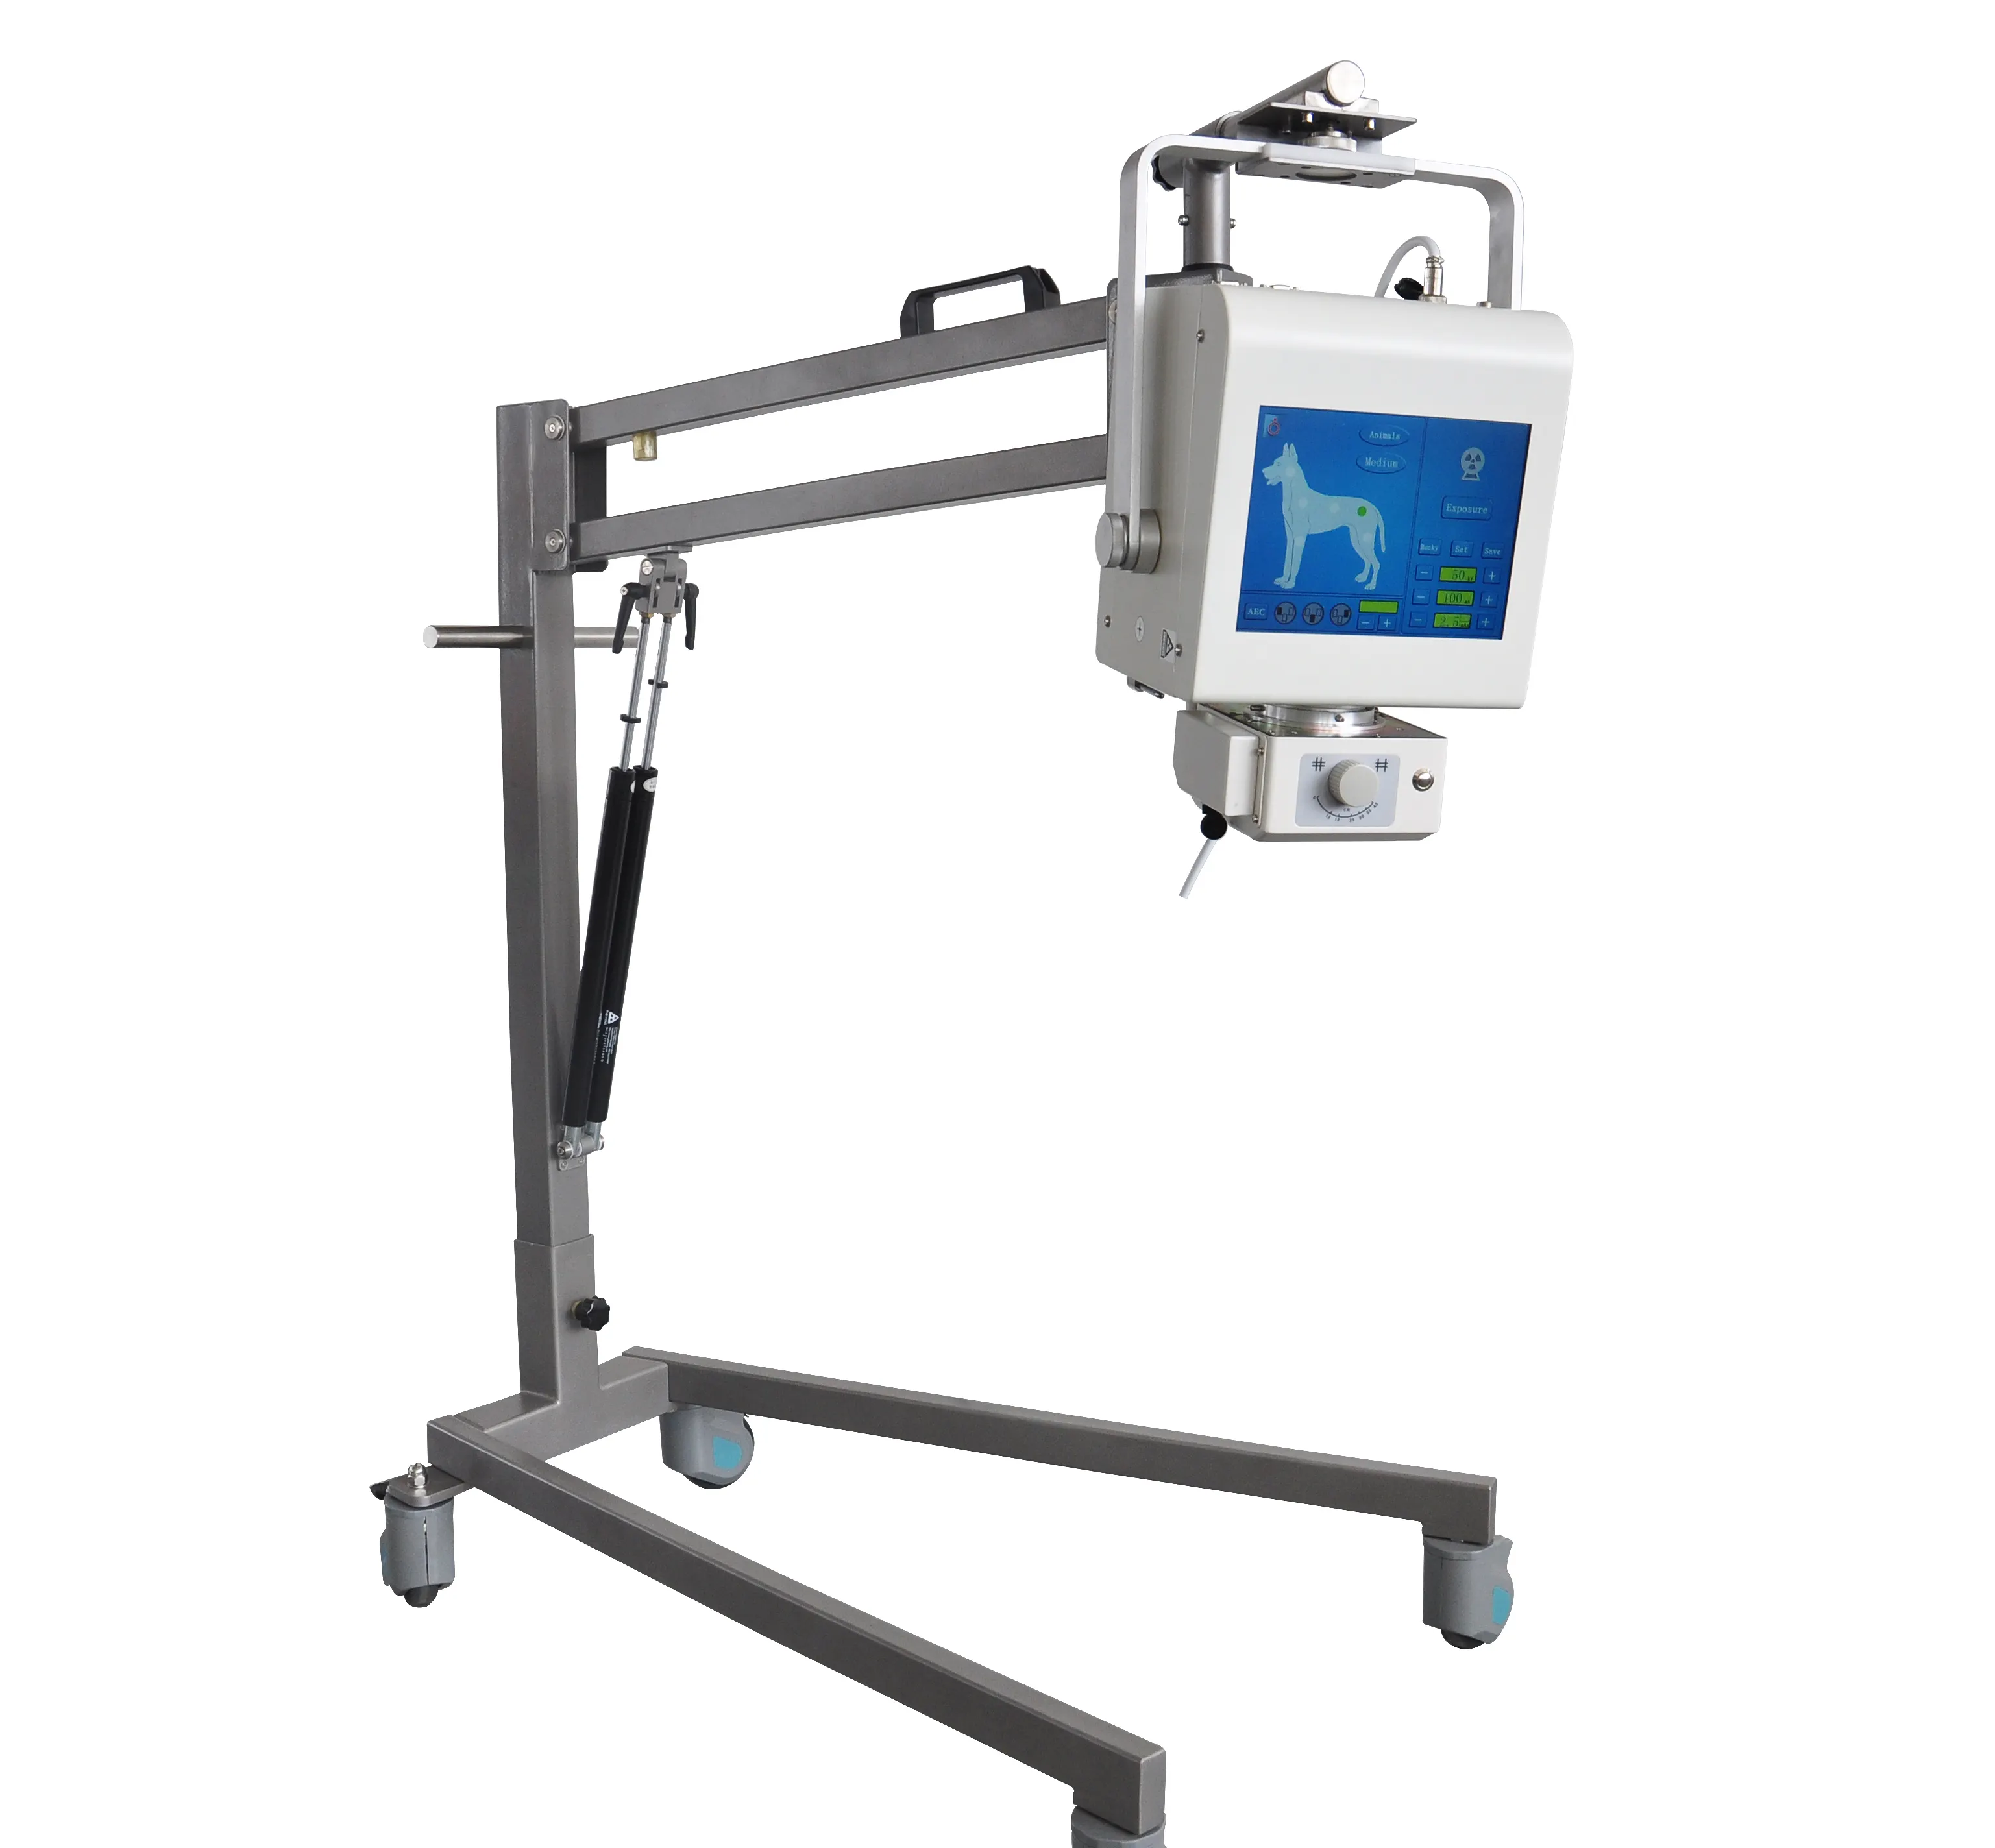 יצרן קרני רנטגן 5kw 100mA DR מכונת רנטגן דיגיטלית וטרינרית ניידת עם פאנל שטוח